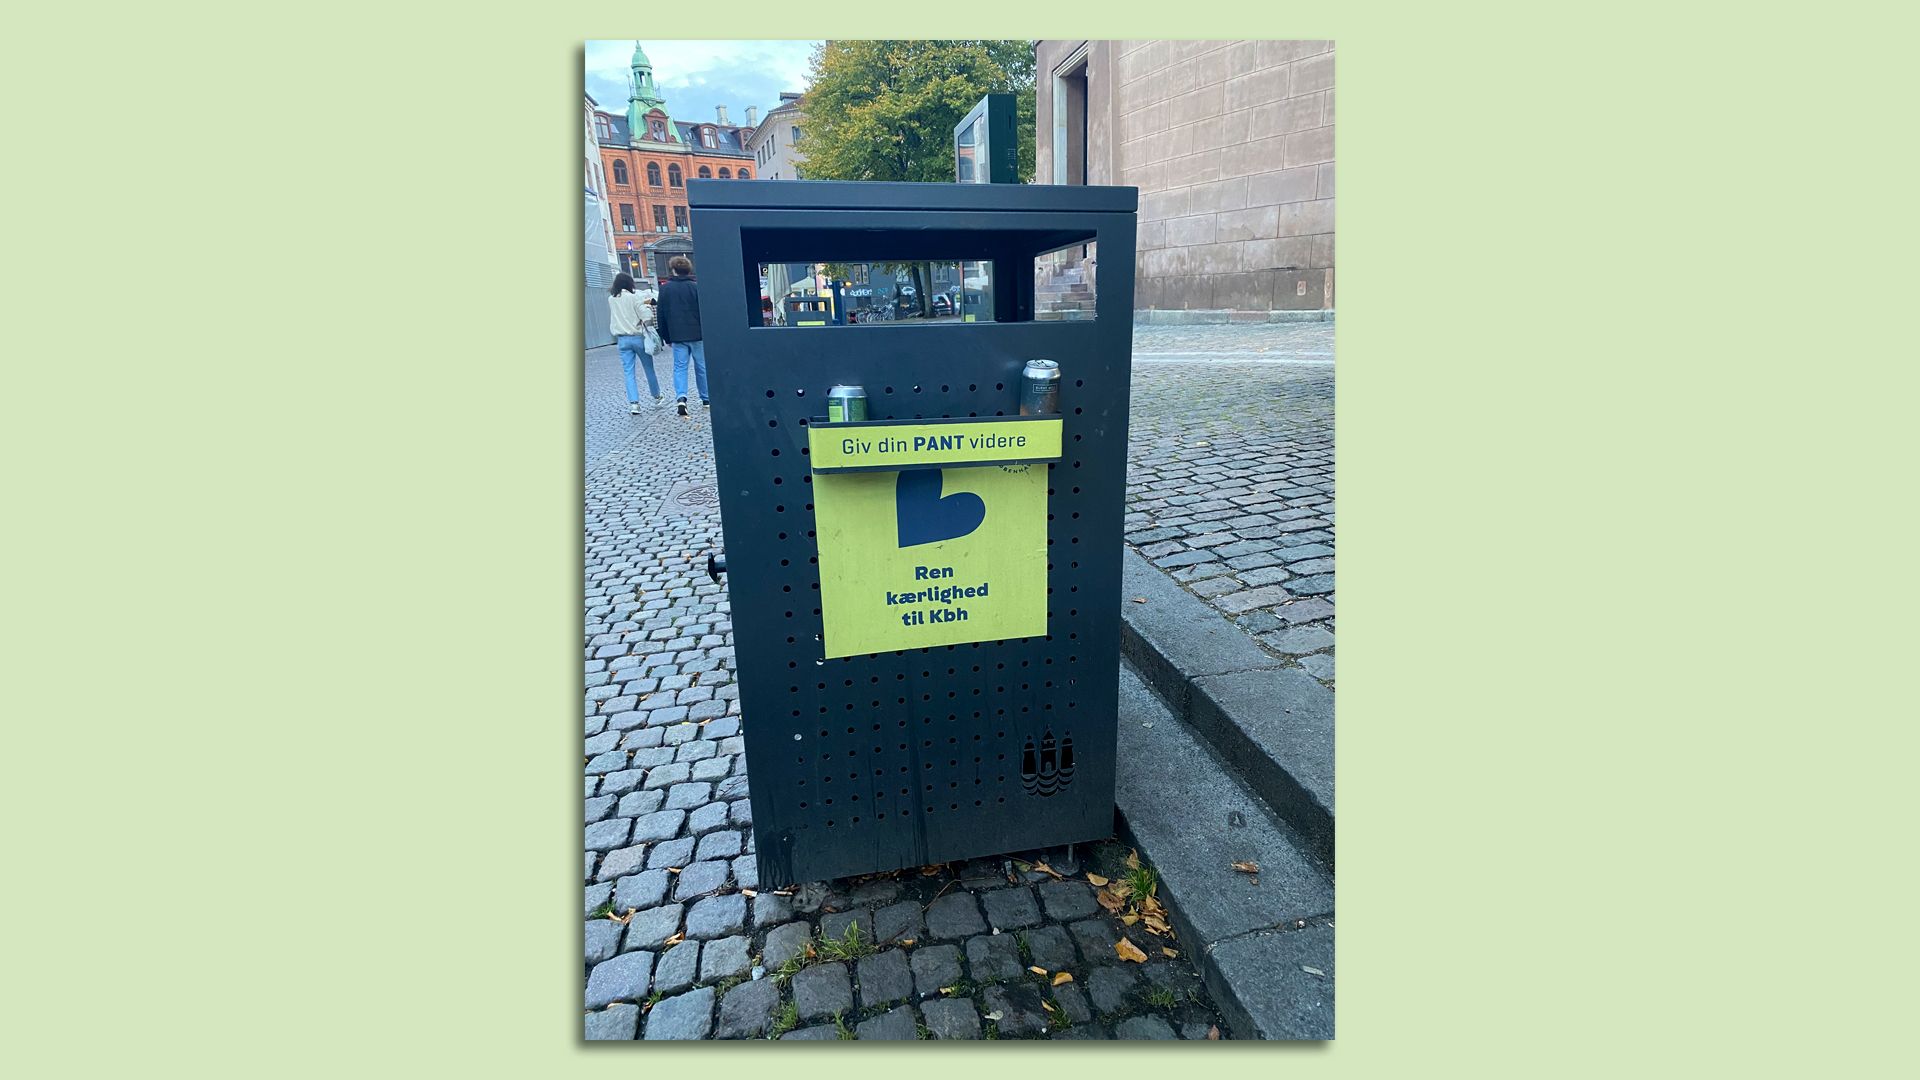 A trash/recycling bin in Copenhagen